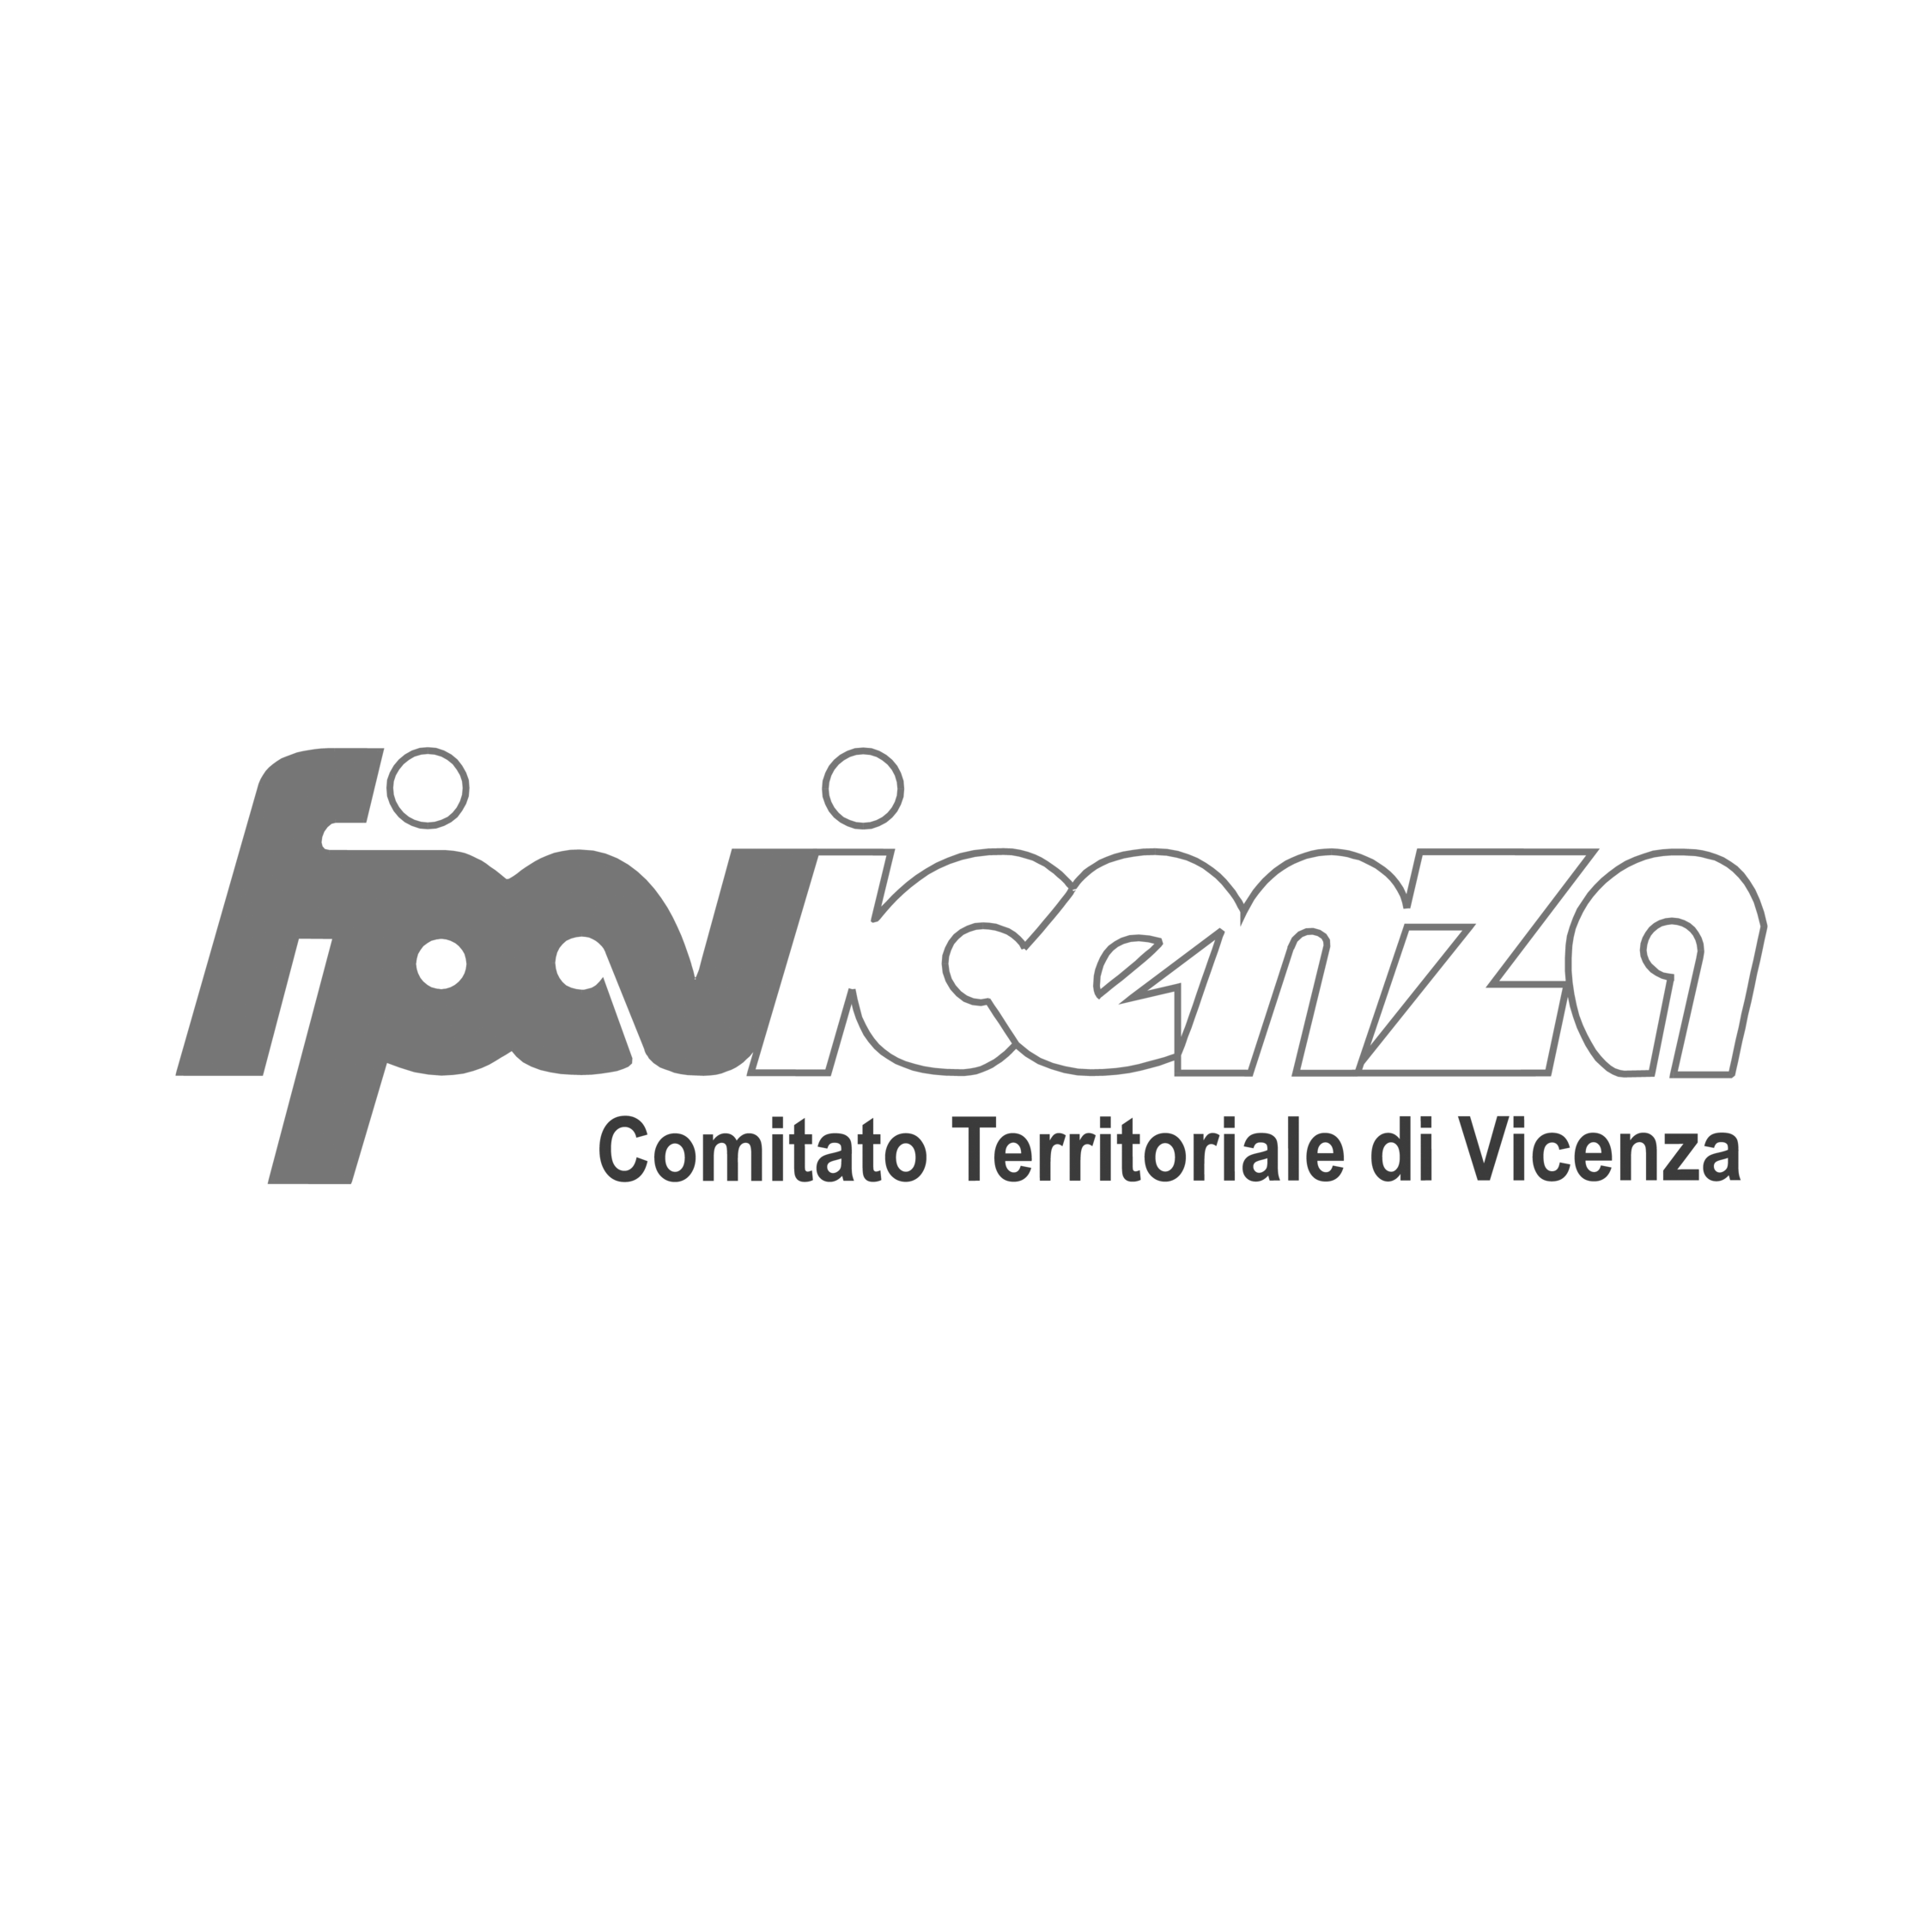 Logo FIPAV VICENZA